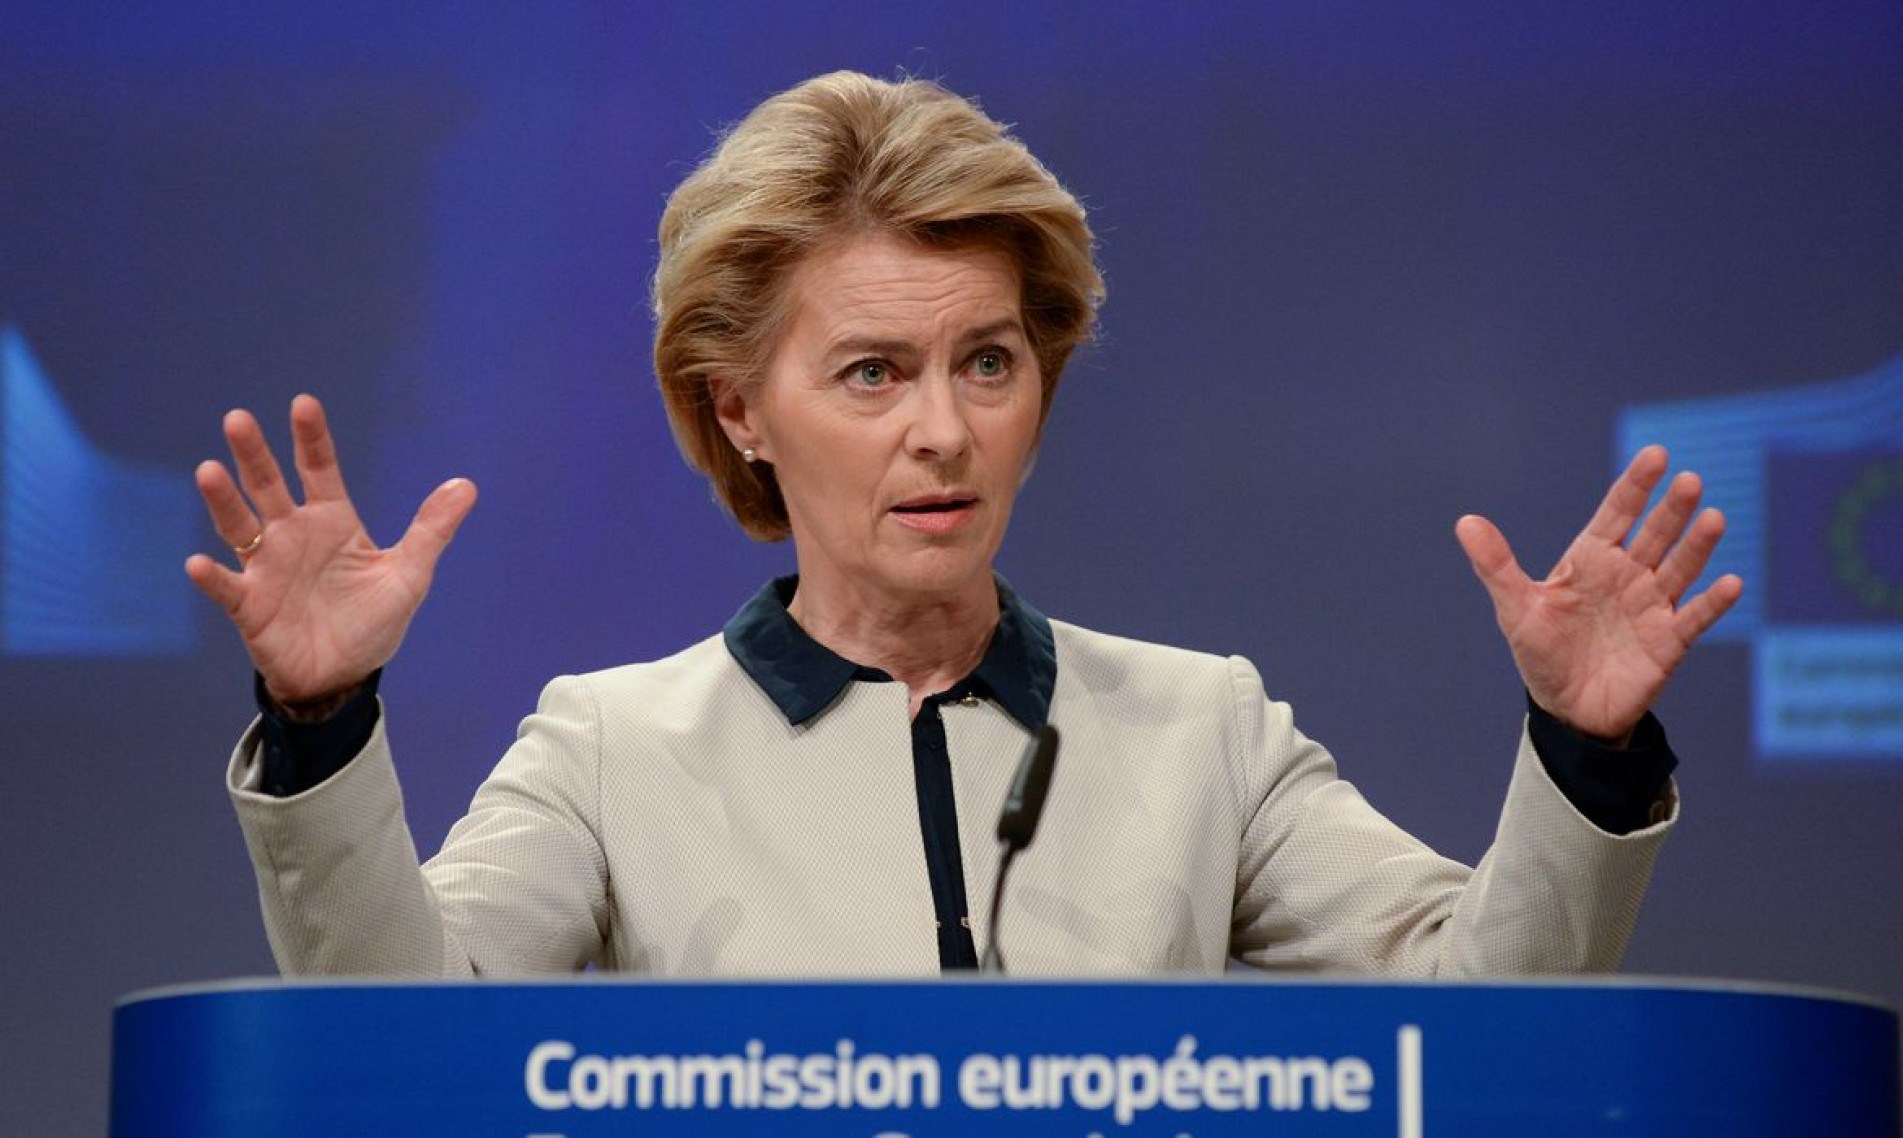 A presidenta da Comissão Europeia, Ursula von der Leyen.